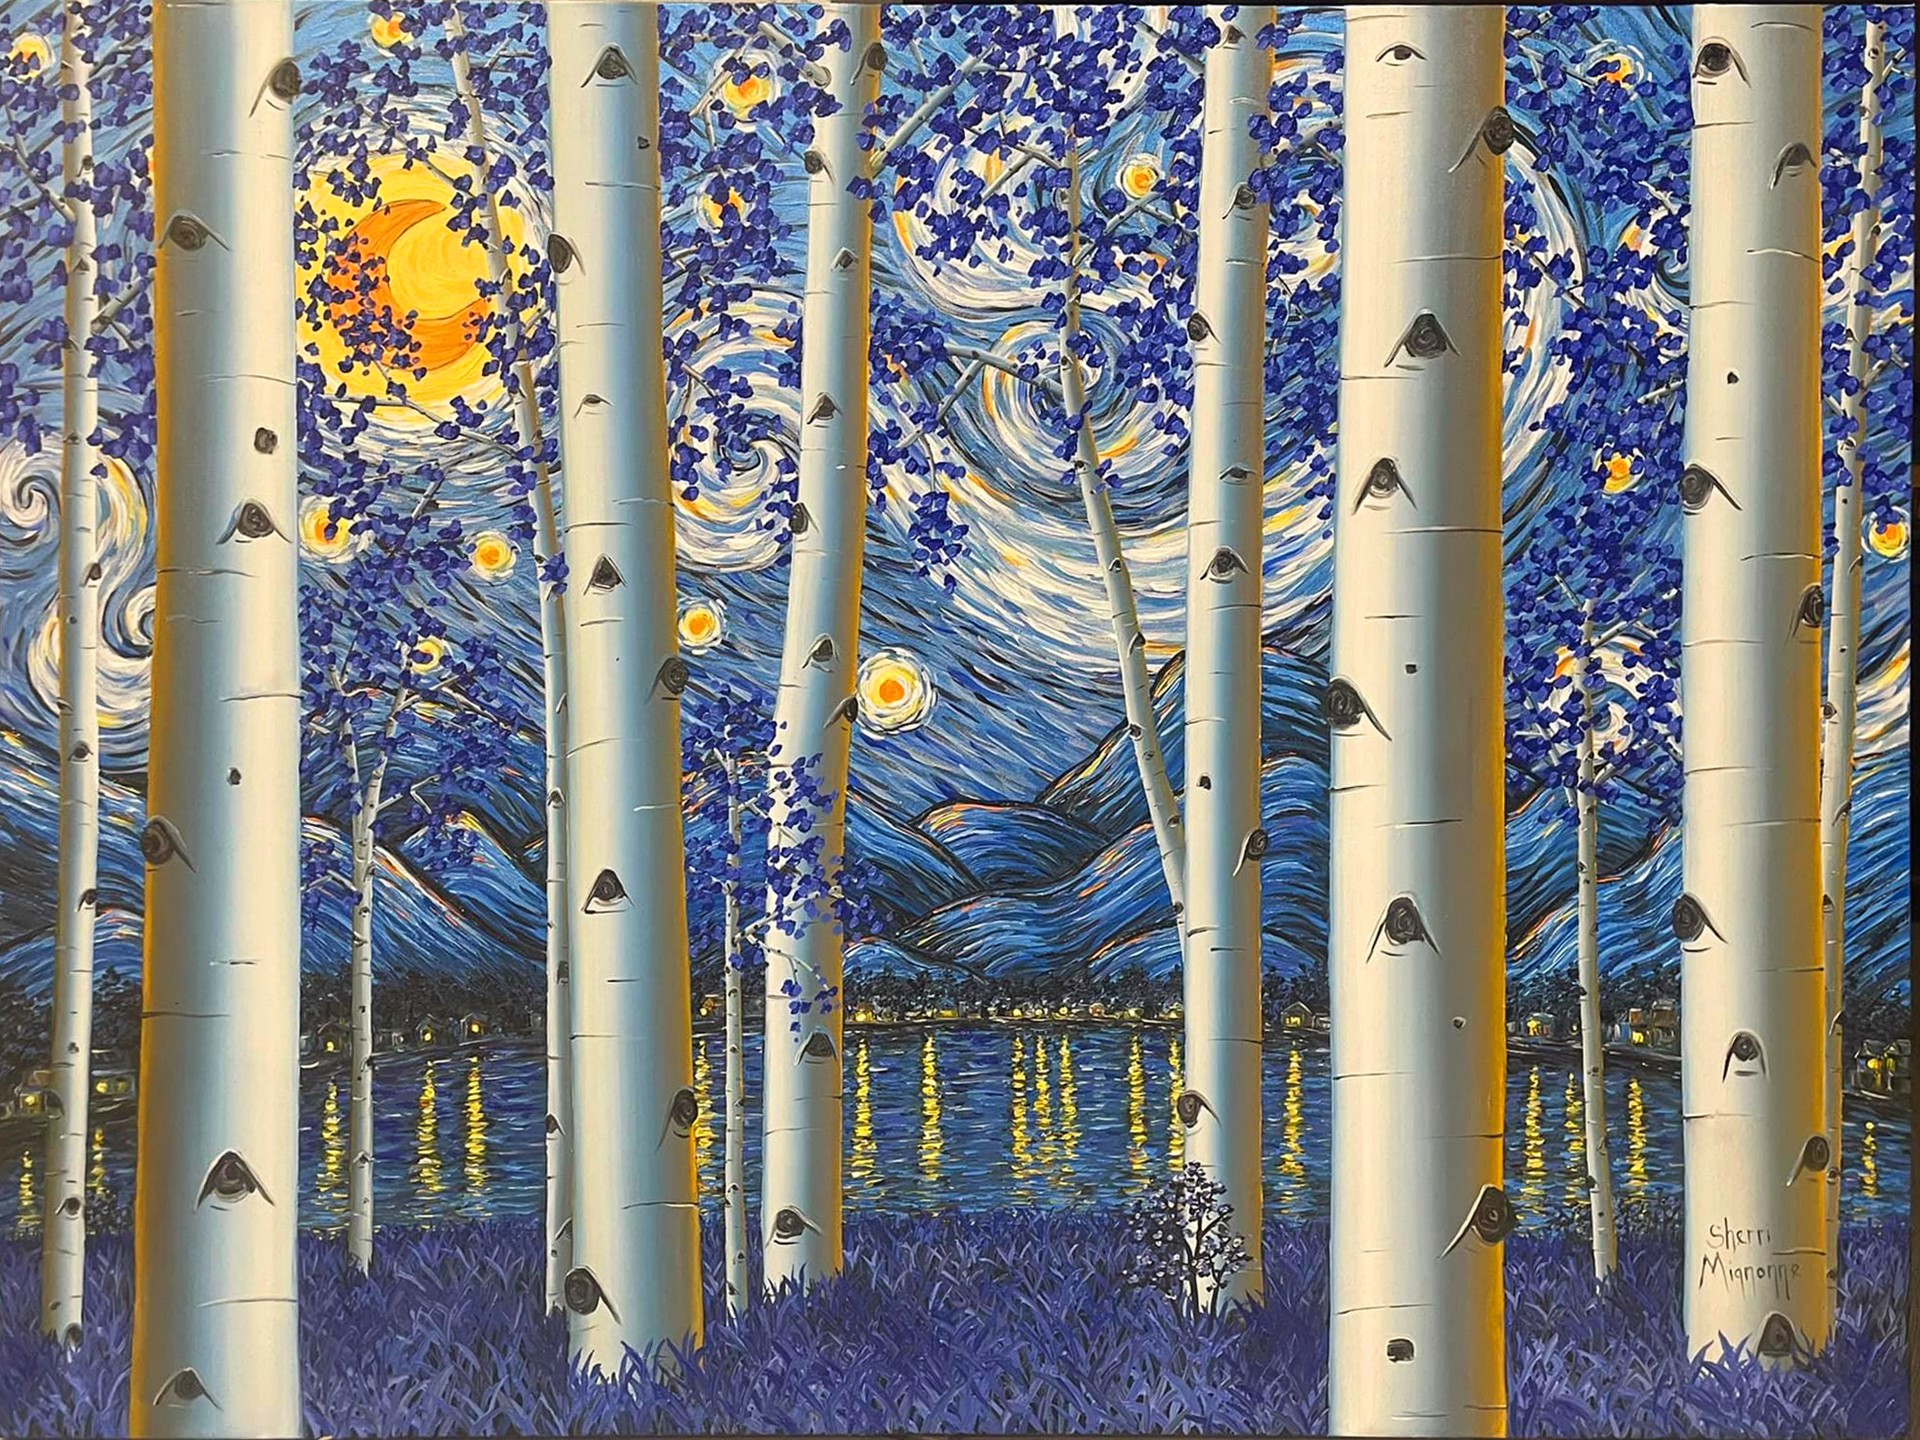 Allure (Starry Night) by Sherri Mignonne